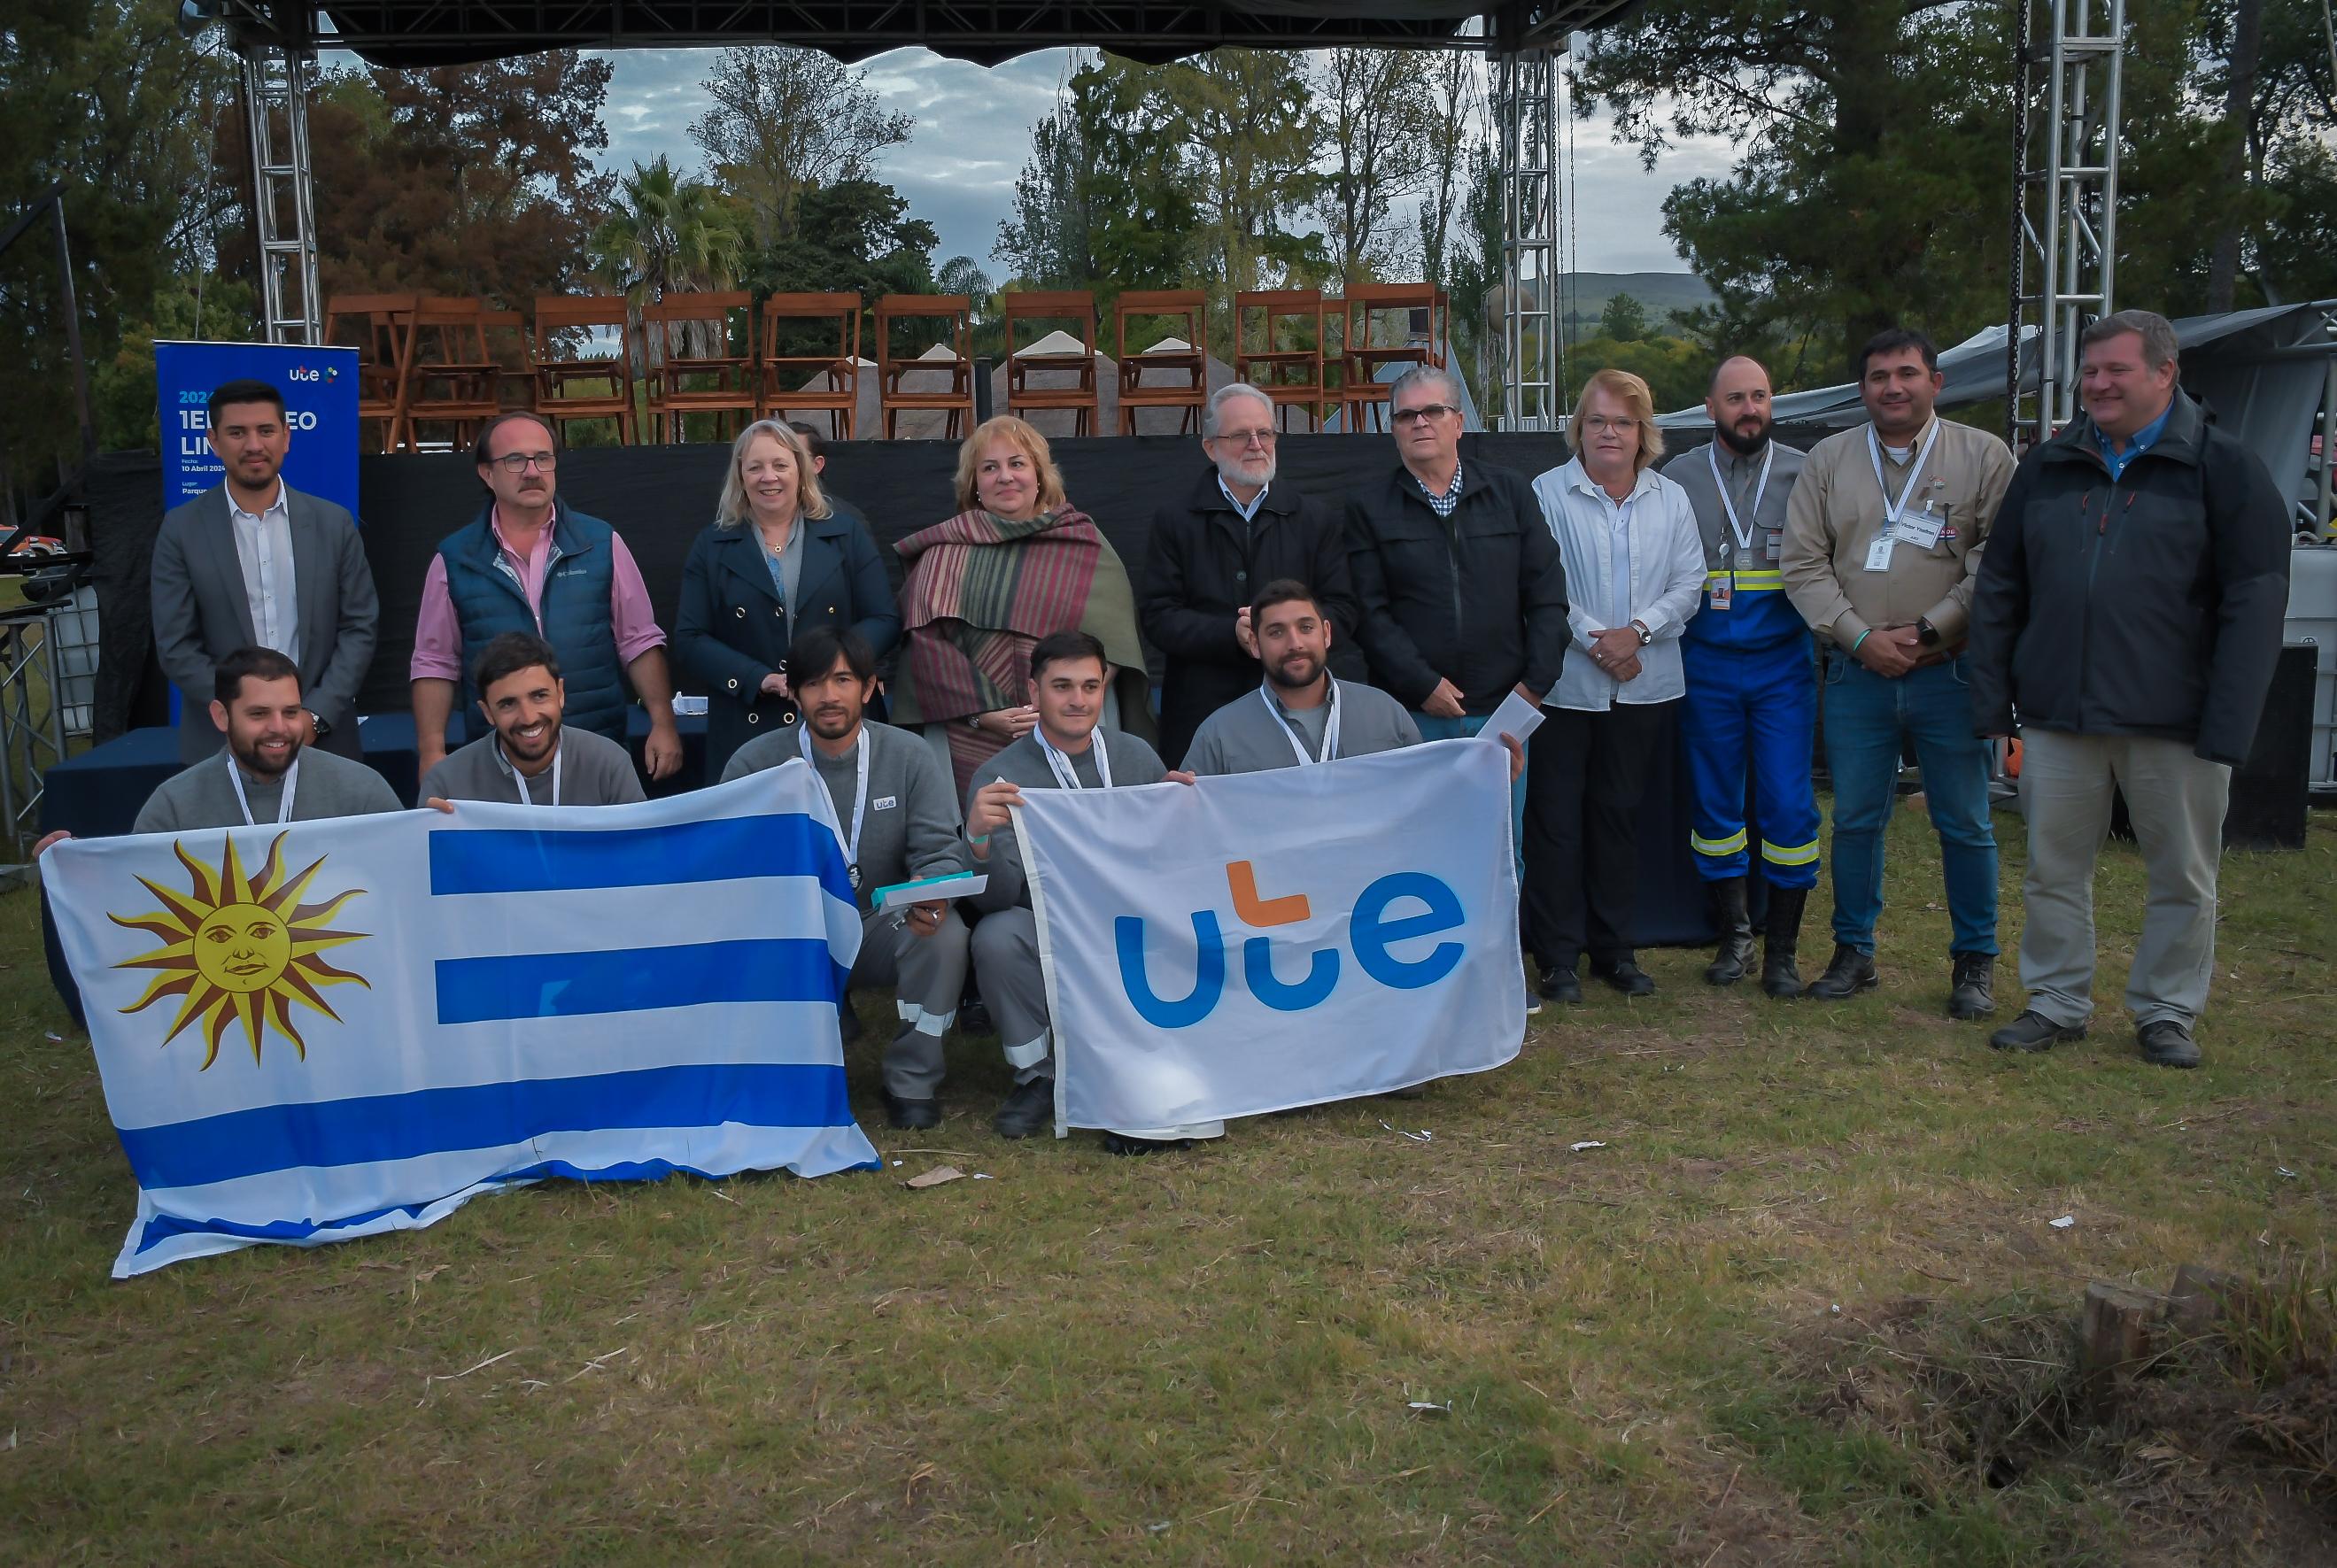 Primer Rodeo de Linieros en Uruguay